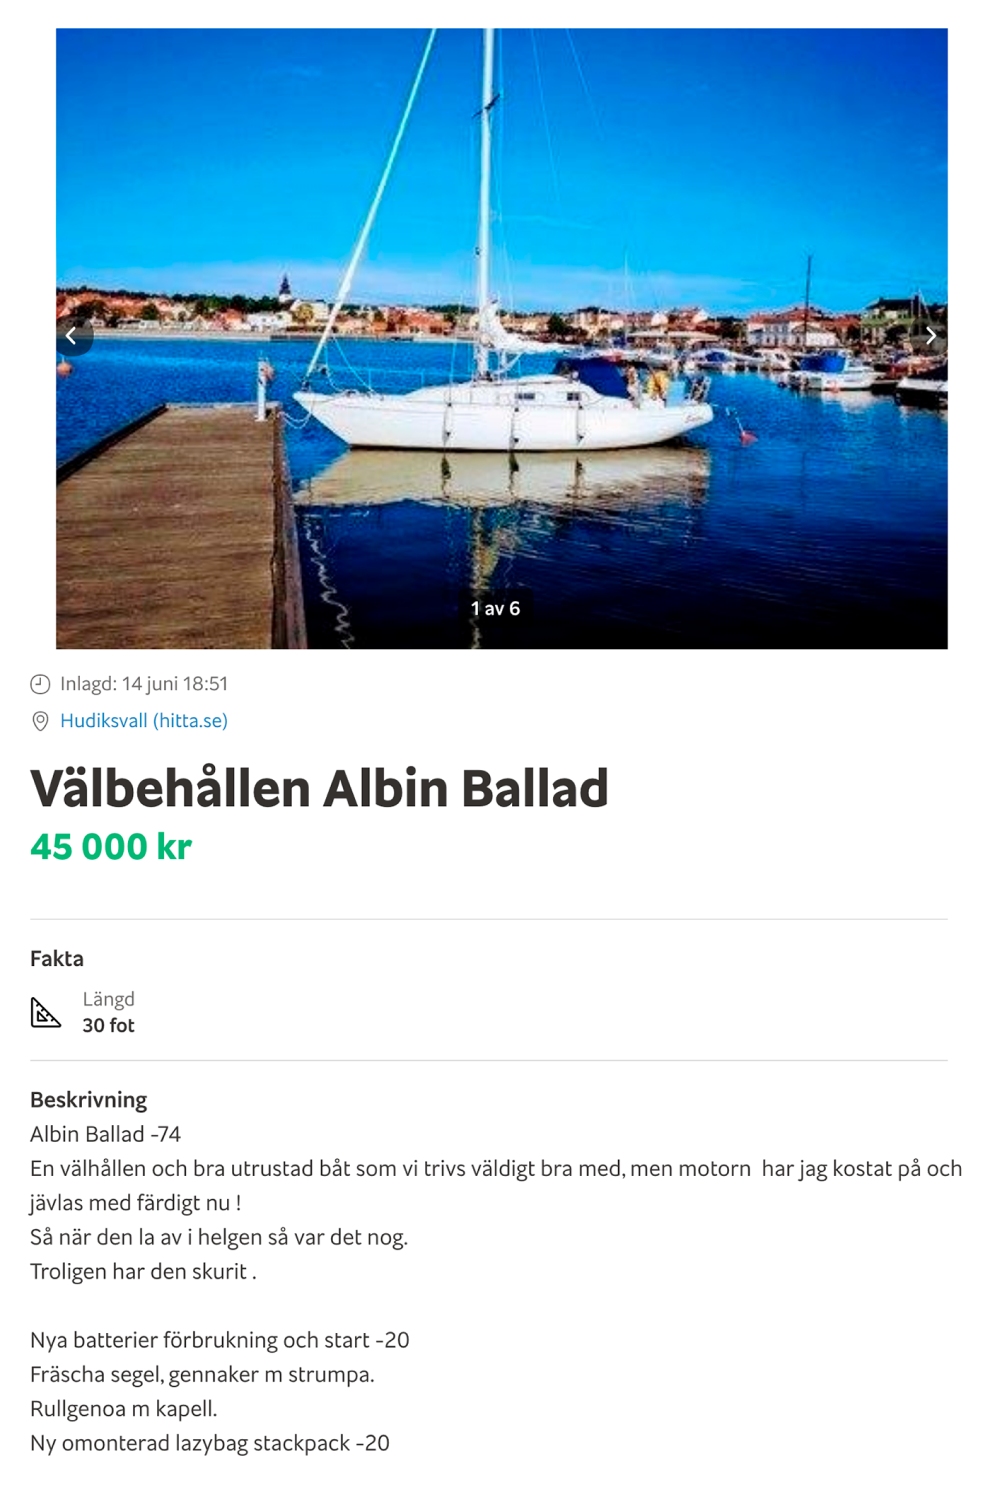 Другой продавец предлагает купить Albin Ballad за 45 000 kr (382 500 ₽). Эта яхта на год старше, чем первая, и в худшем состоянии, поэтому почти в два раза дешевле